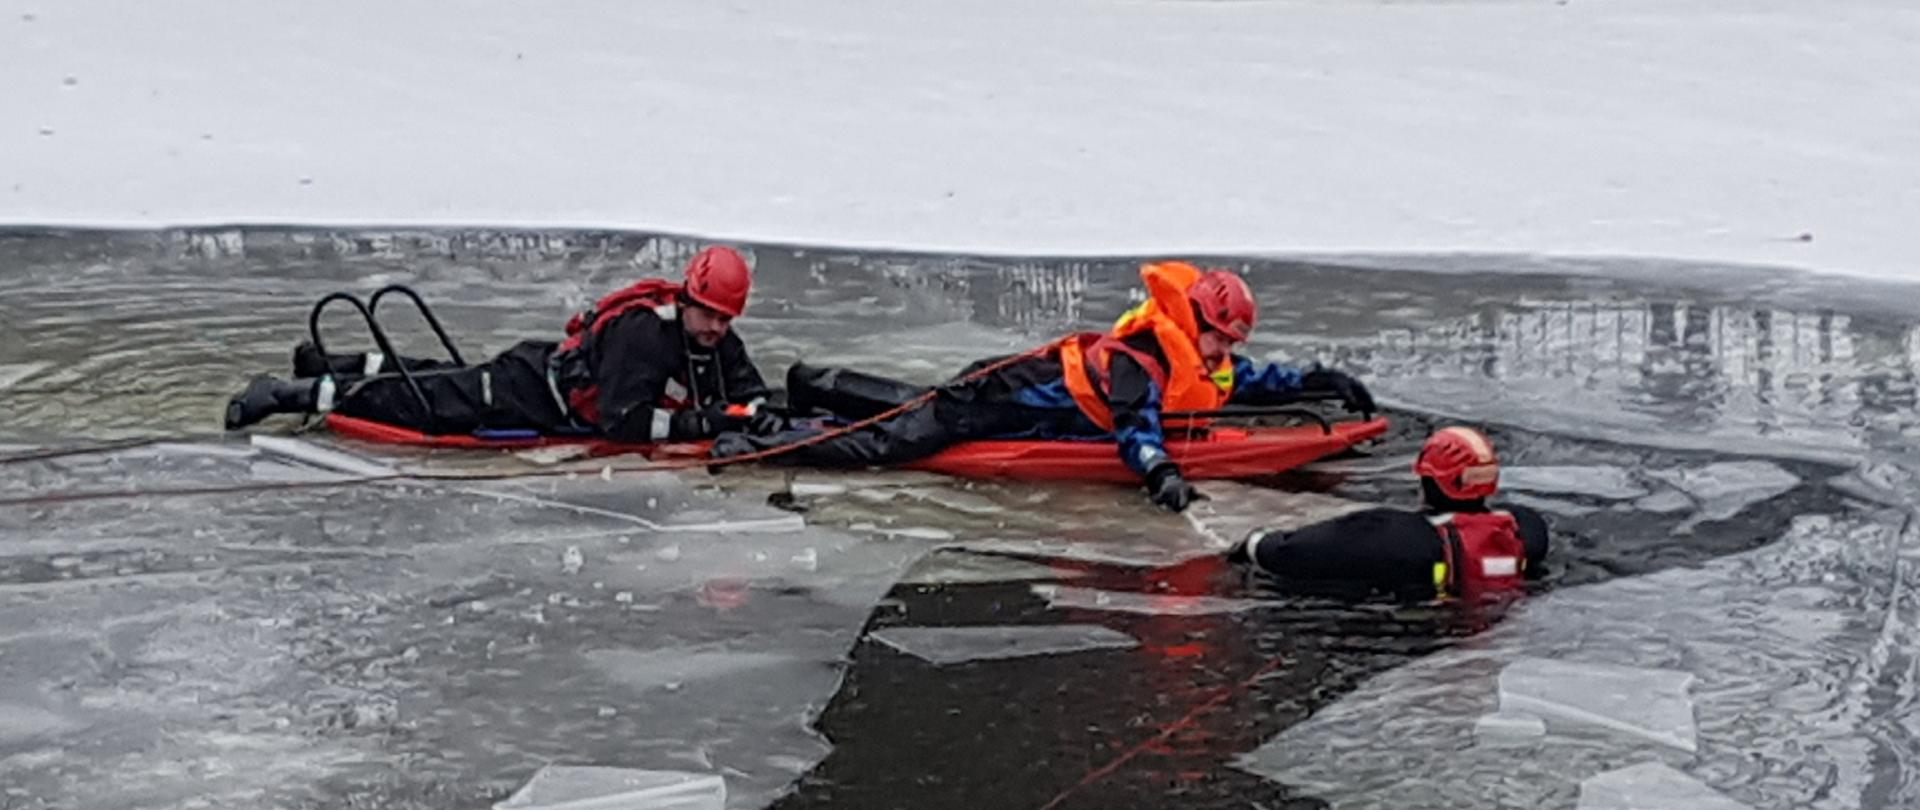 Dwójka strażaków na saniach lodowych przemieszczających się po zamarzniętym stawie w kierunku trzeciego strażaka zanurzonego w wodzie.